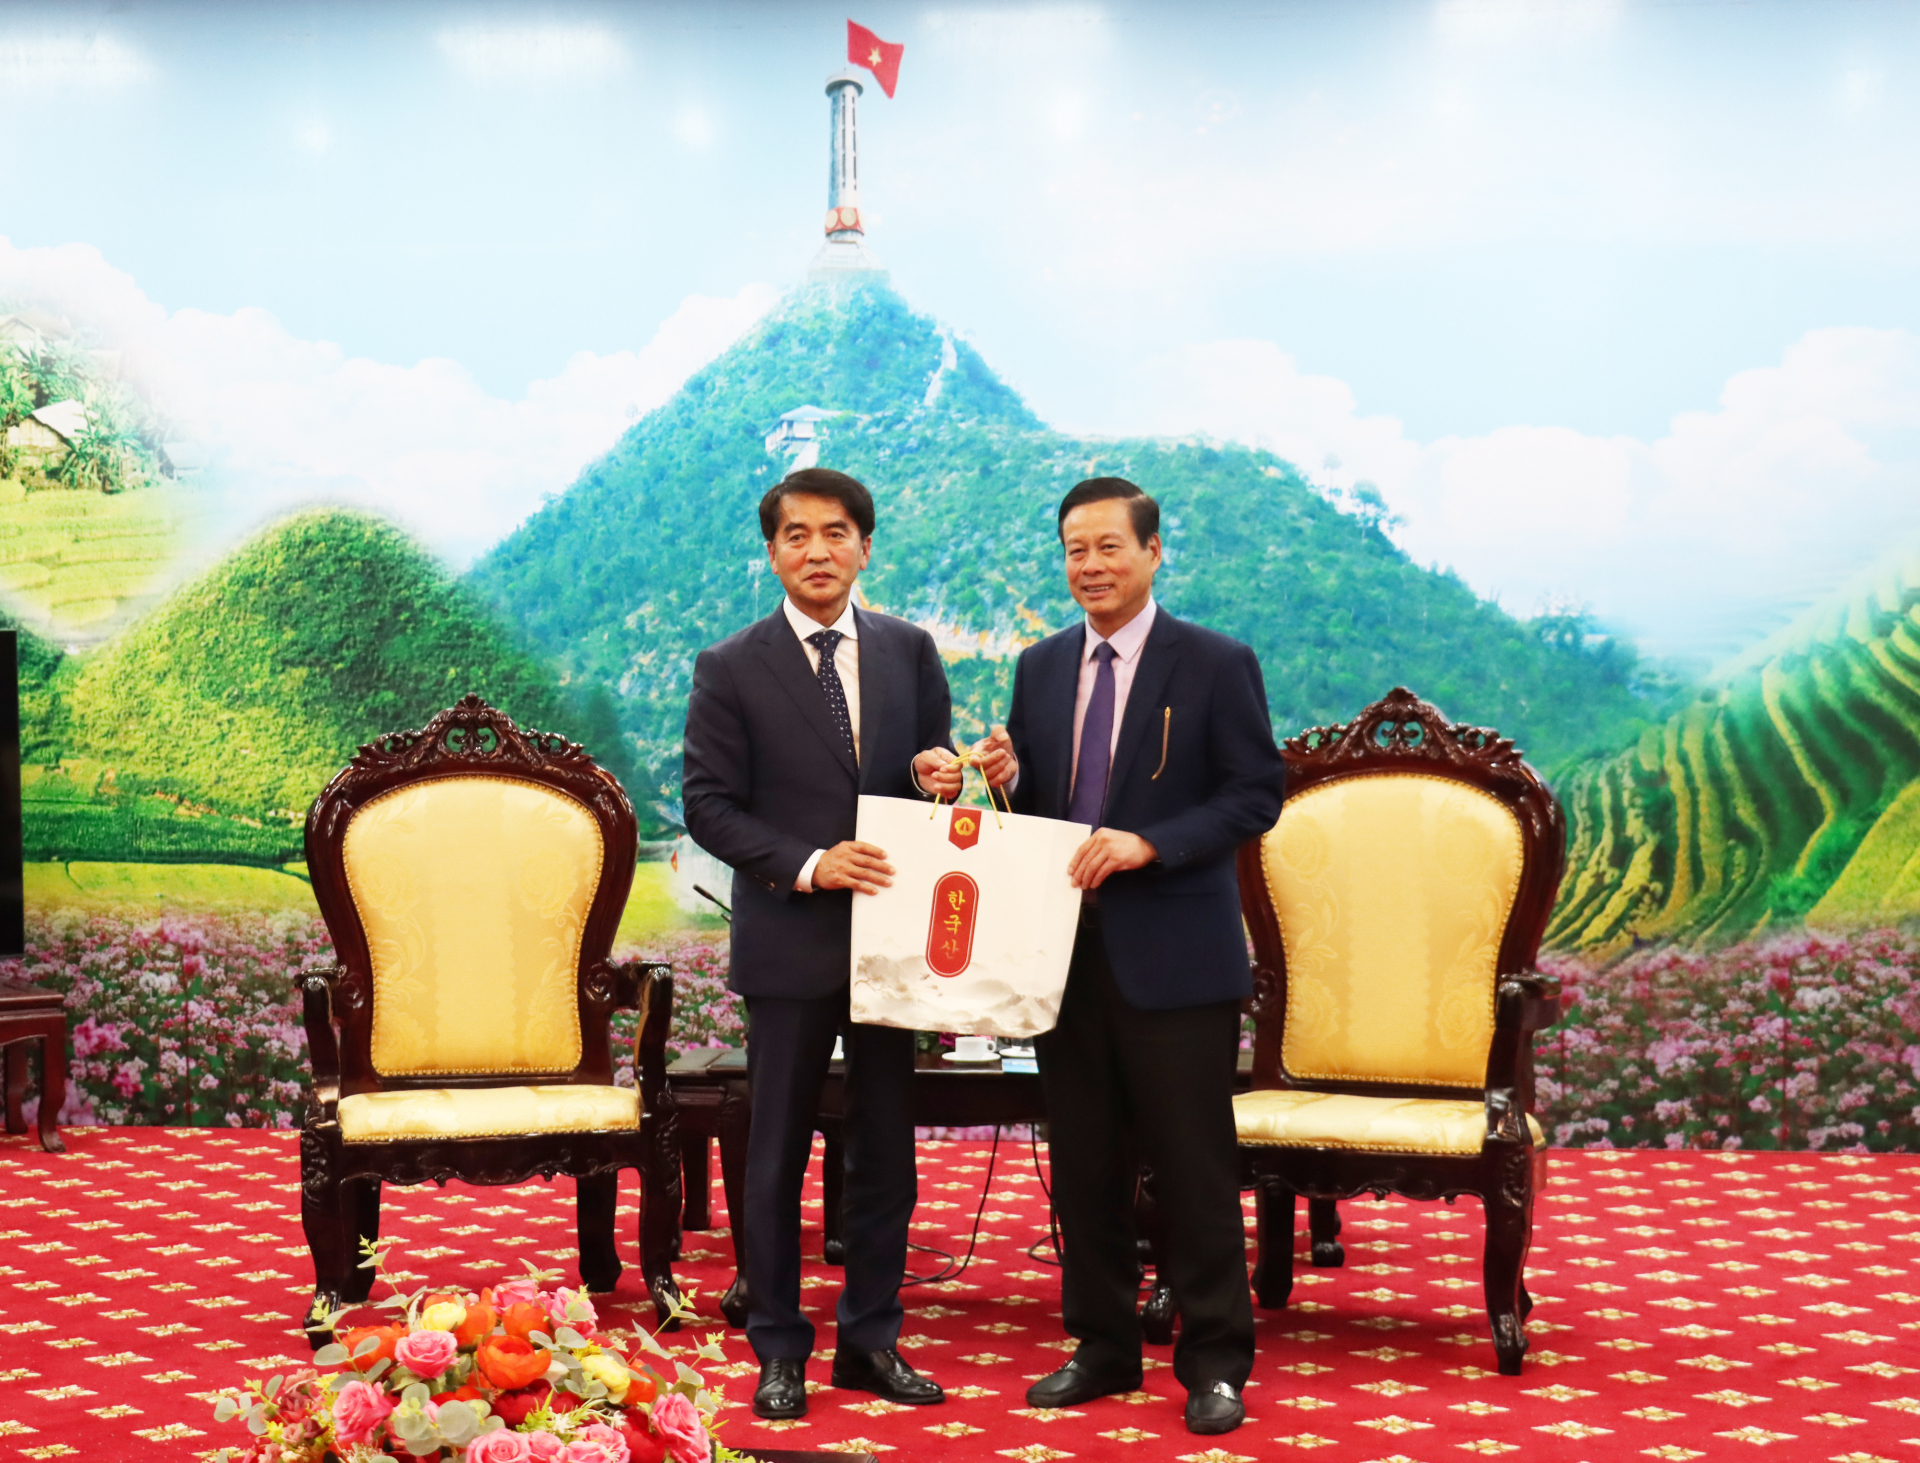 Ngài Jea Hyeong Choi, Quận trưởng quận Boeun tặng quà lưu niệm cho Chủ tịch UBND tỉnh Nguyễn Văn Sơn.